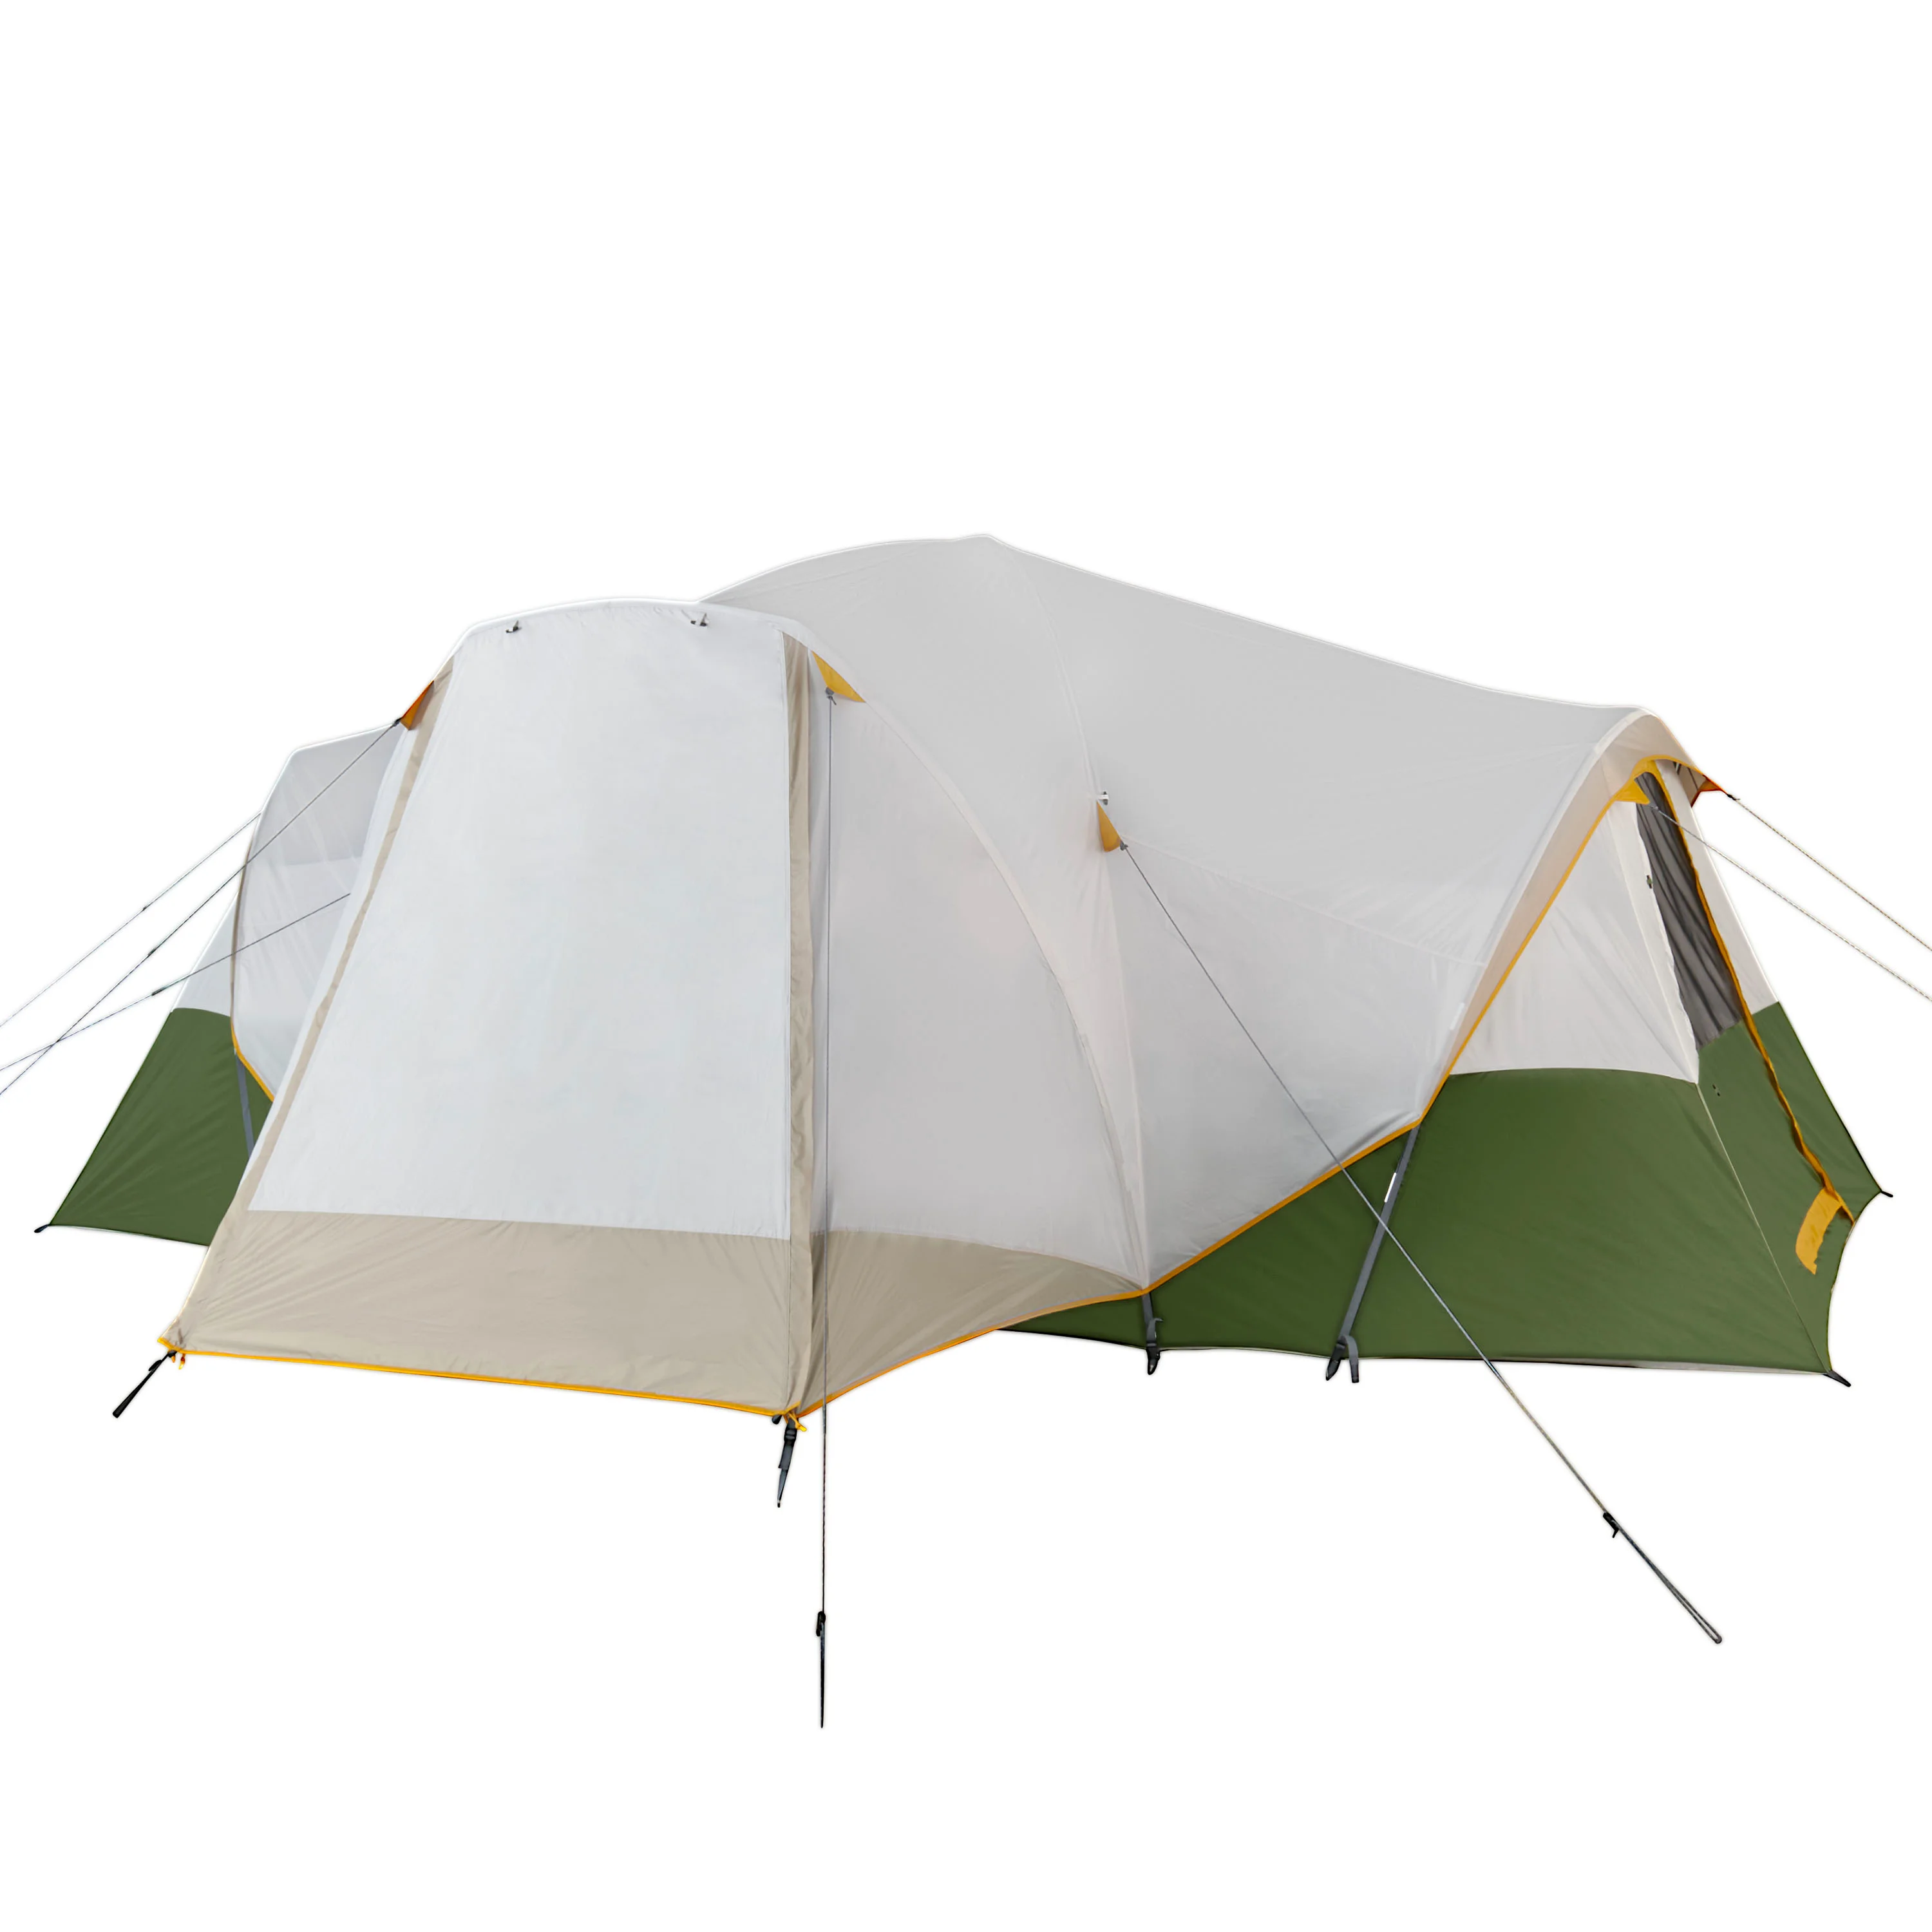 

Гибридная купольная палатка Riverbend на 10 человек, 3 комнаты, светло-белая/зеленая, с полным нахлыстом, вес 26 фунтов. 6 унций.